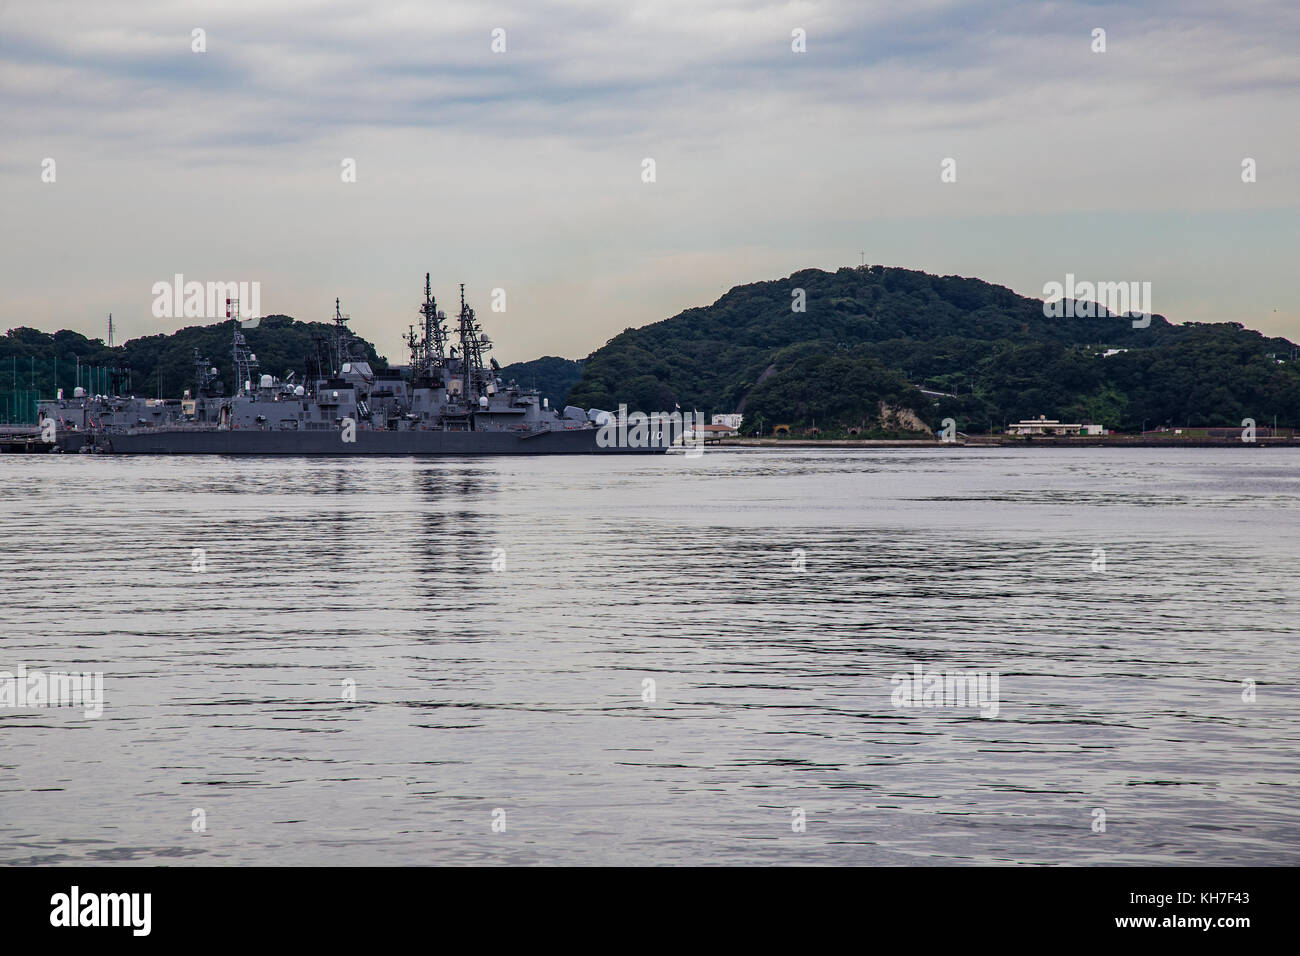 Navi della JMSDF sit in porto, ormeggiata nel porto di Yokosuka. Gli Stati Uniti Marina in base Yokosuka si trova direttamente di fronte a loro. Foto Stock